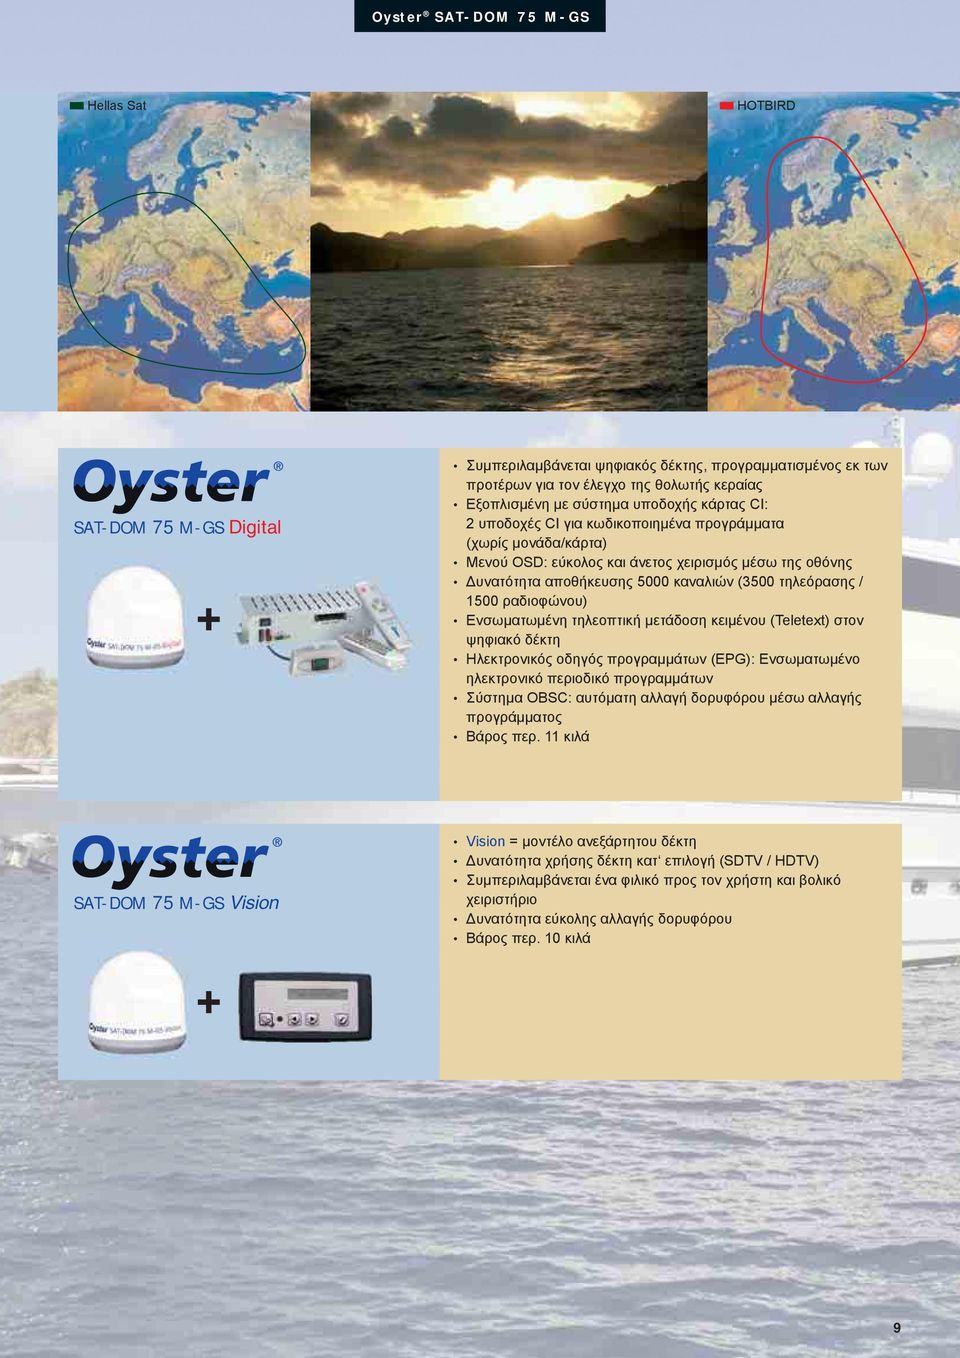 1500 ραδιοφώνου) Ενσωματωμένη τηλεοπτική μετάδοση κειμένου (Teletext) στον ψηφιακό δέκτη Ηλεκτρονικός οδηγός προγραμμάτων (EPG): Ενσωματωμένο ηλεκτρονικό περιοδικό προγραμμάτων Σύστημα OBSC: αυτόματη